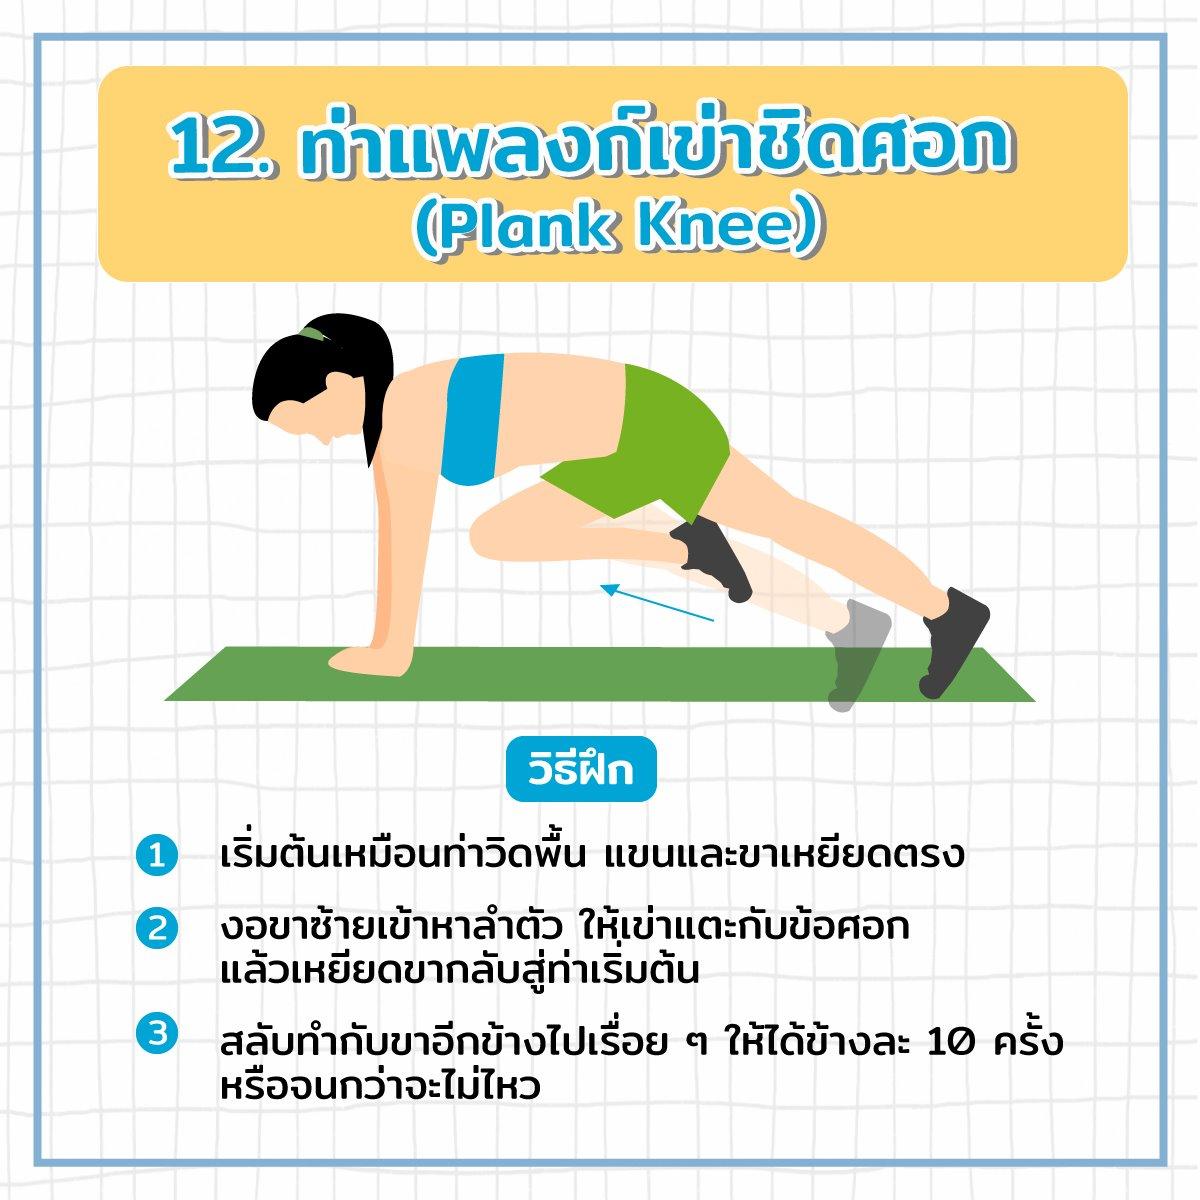 ท่าแพลงก์เข่าชิดศอก (Plank Knee)